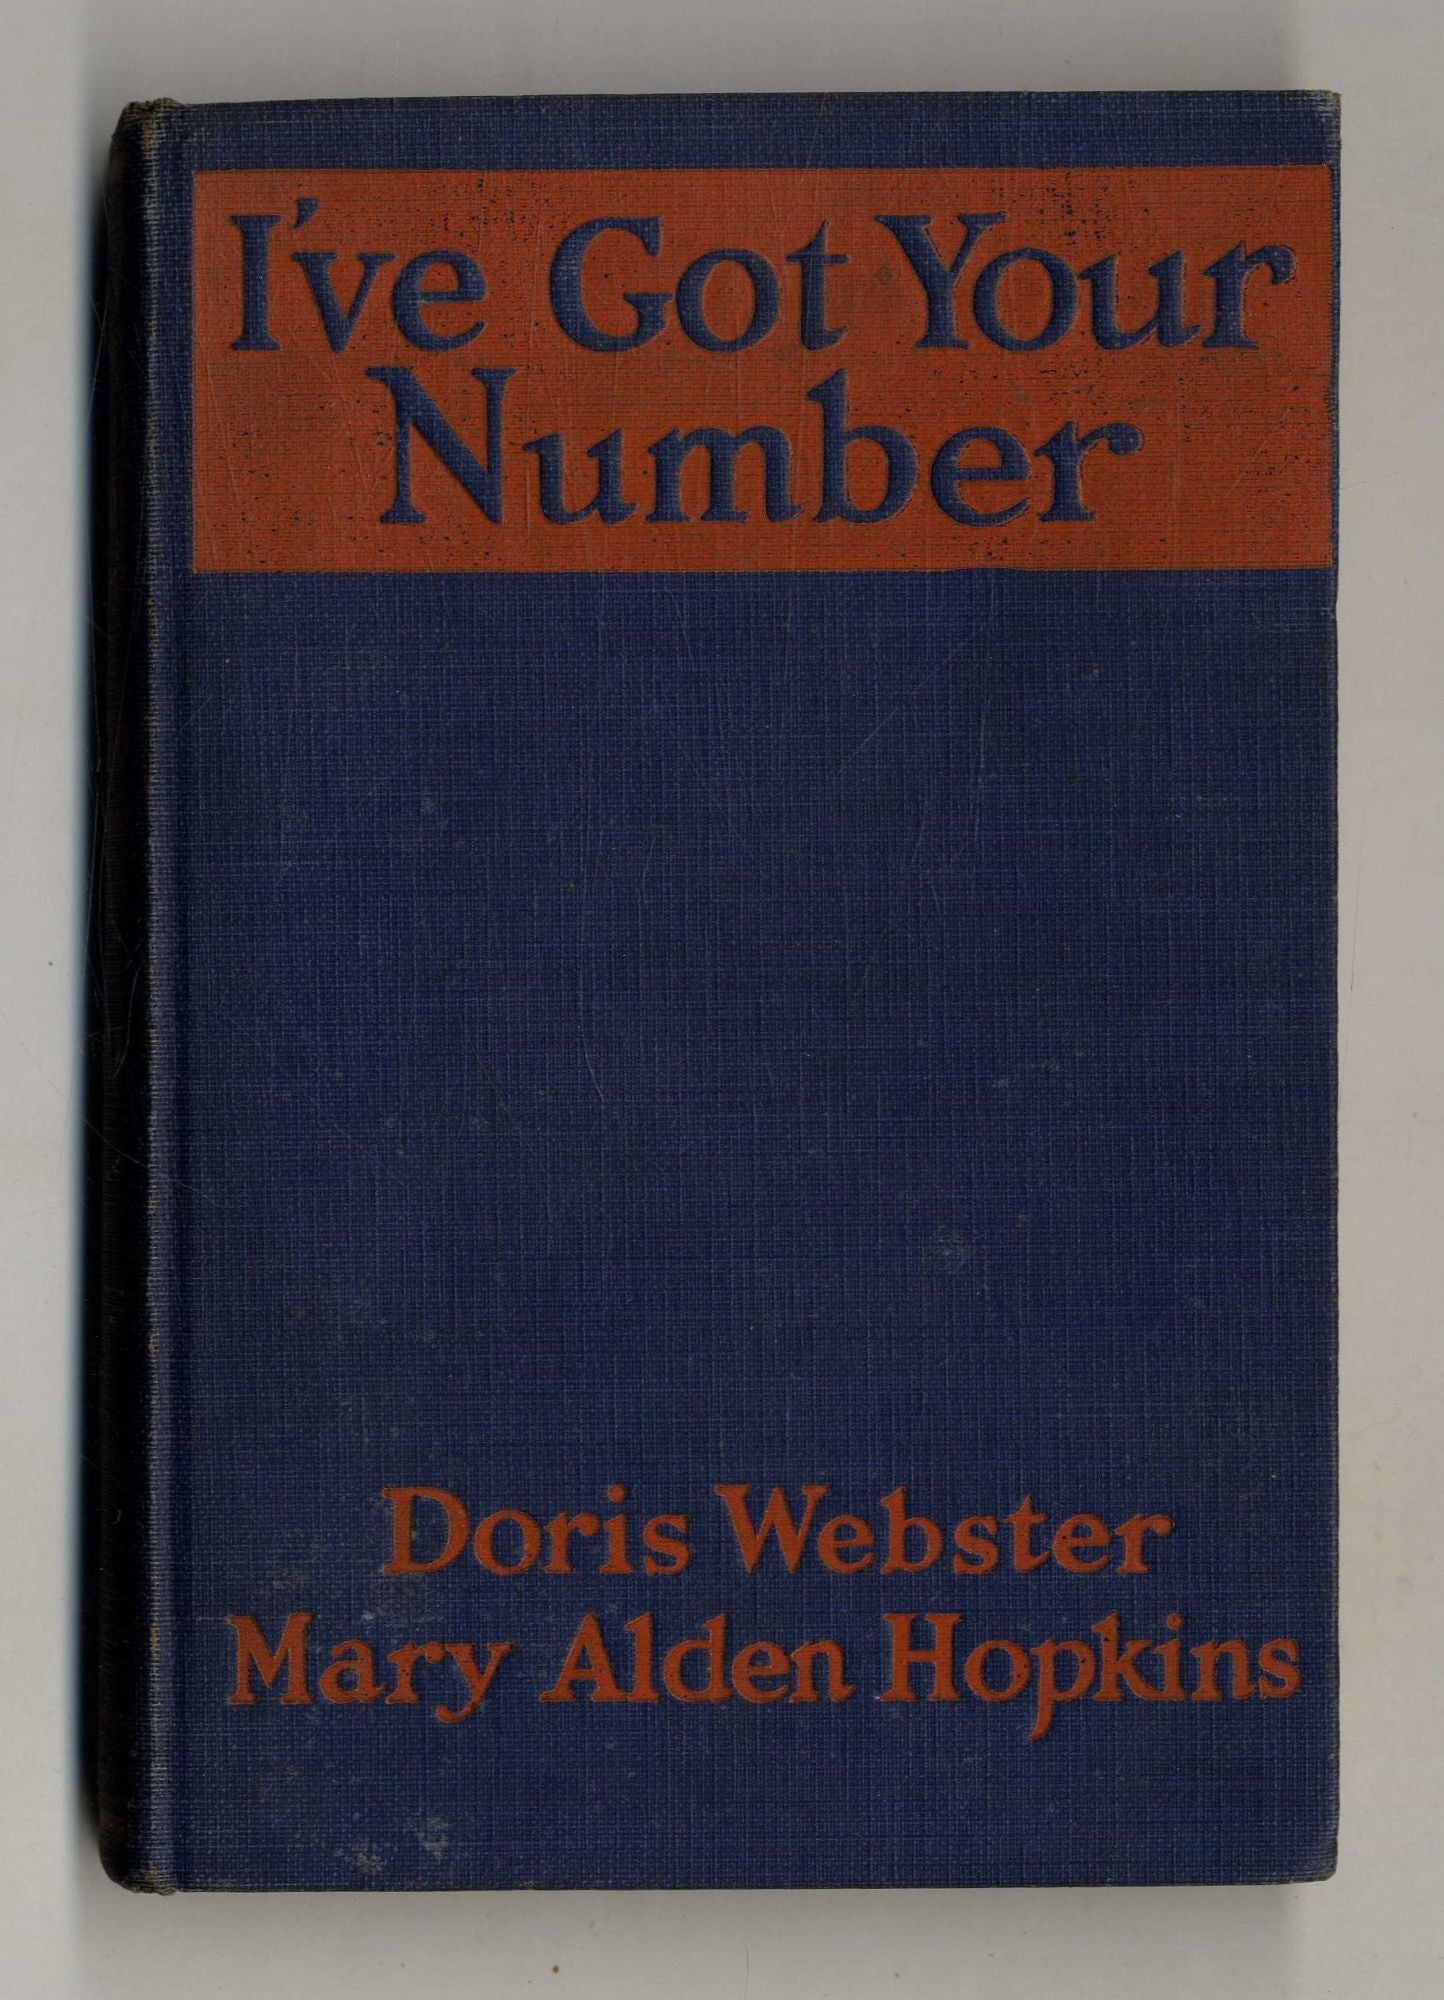 Book #160135 I'Ve Got Your Number A Book of Self Analysis. Doris Webster, Mary Alden Hopkins.